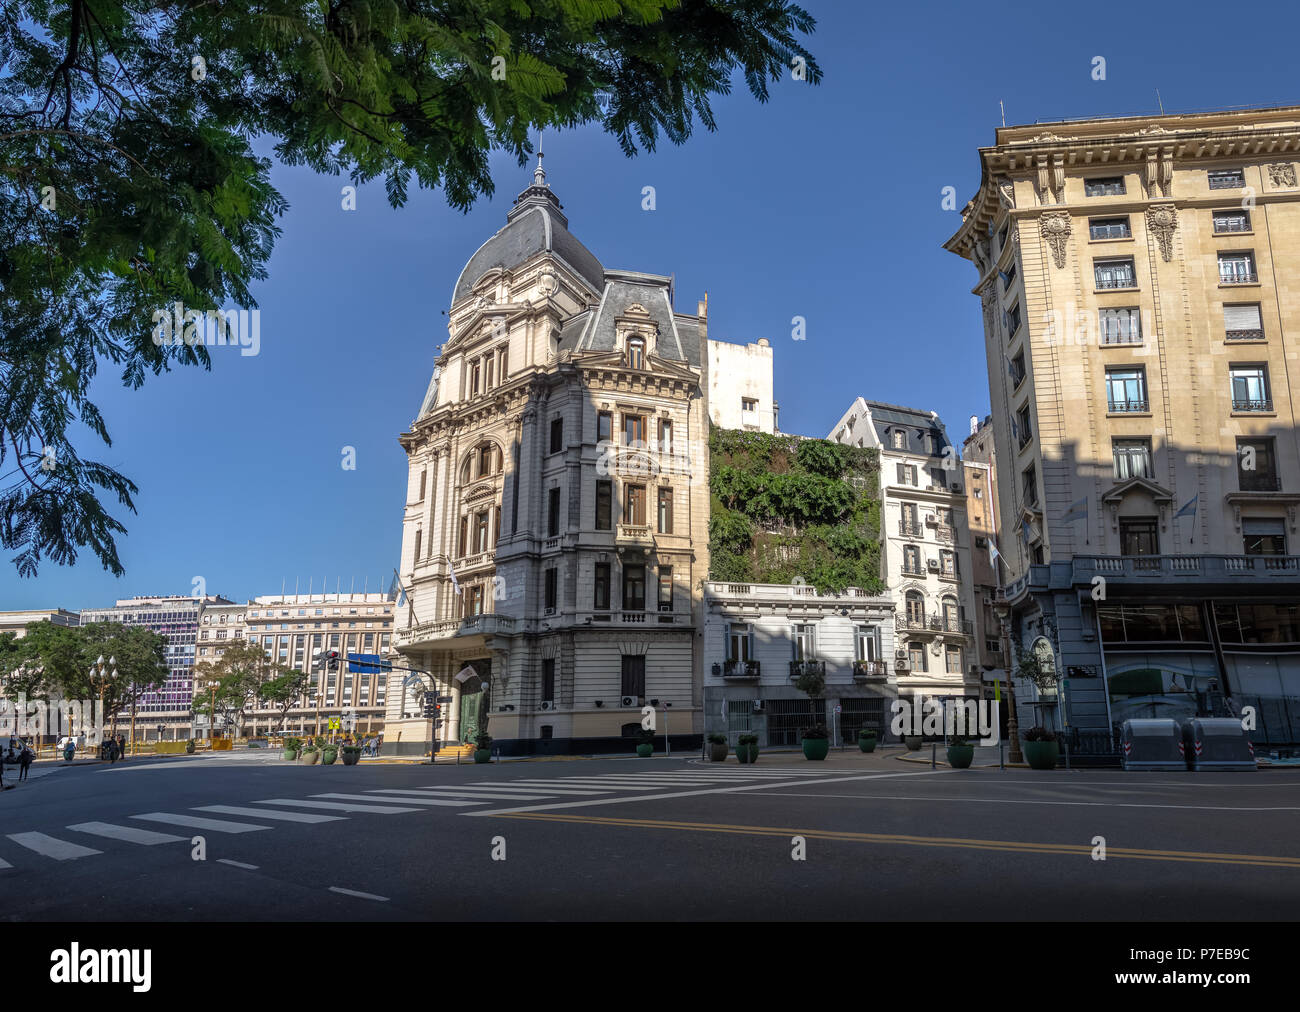 Buenos Aires City Hall - Palacio Municipal de la Ciudad de Buenos Aires - Buenos Aires, Argentina Stock Photo